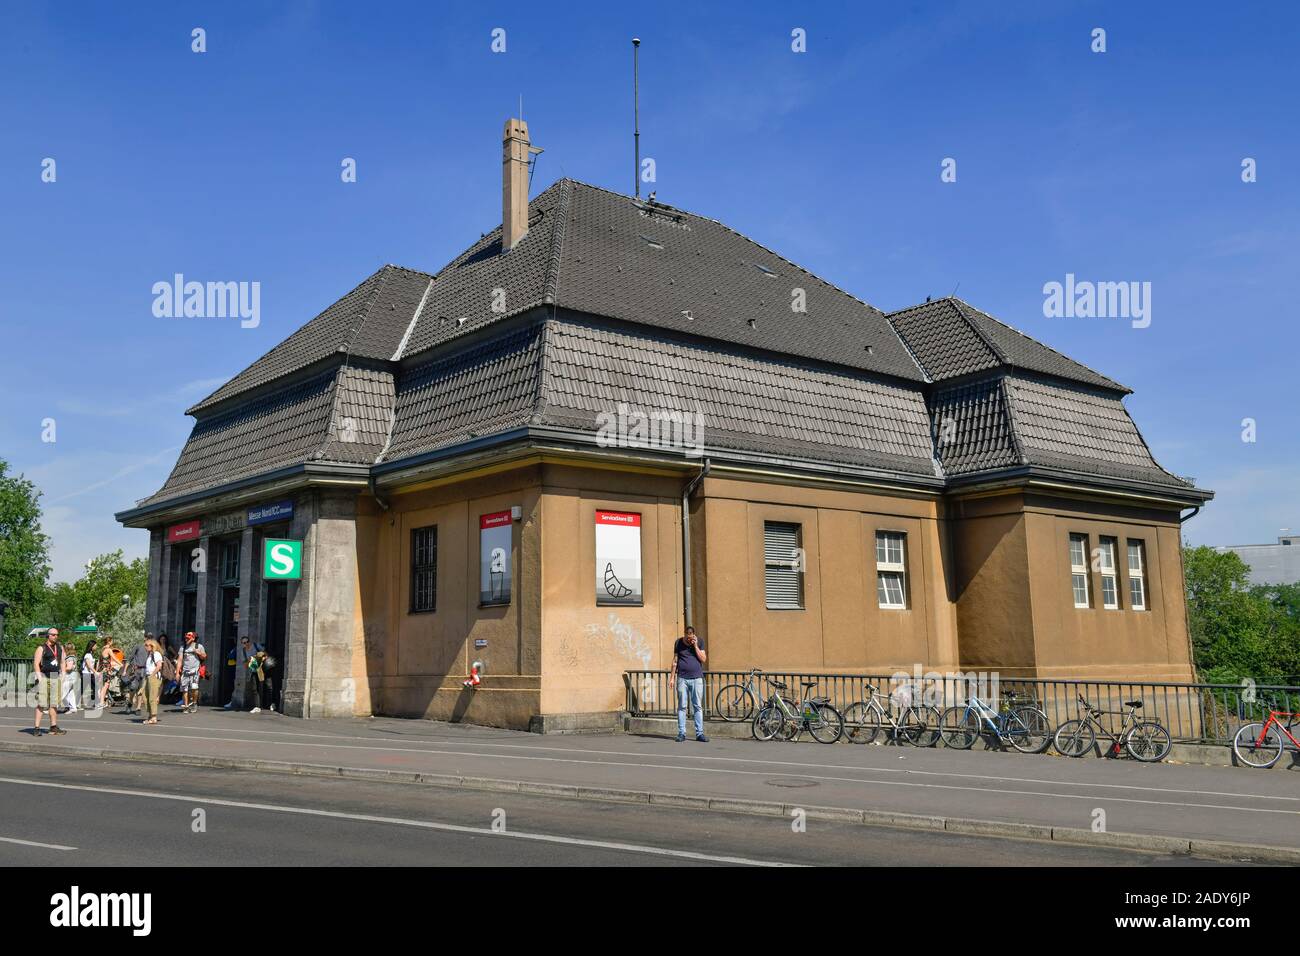 S-Bahnhof Witzleben CPI Messe Nord, Westend, Charlottenburg, Berlin, Deutschland Banque D'Images